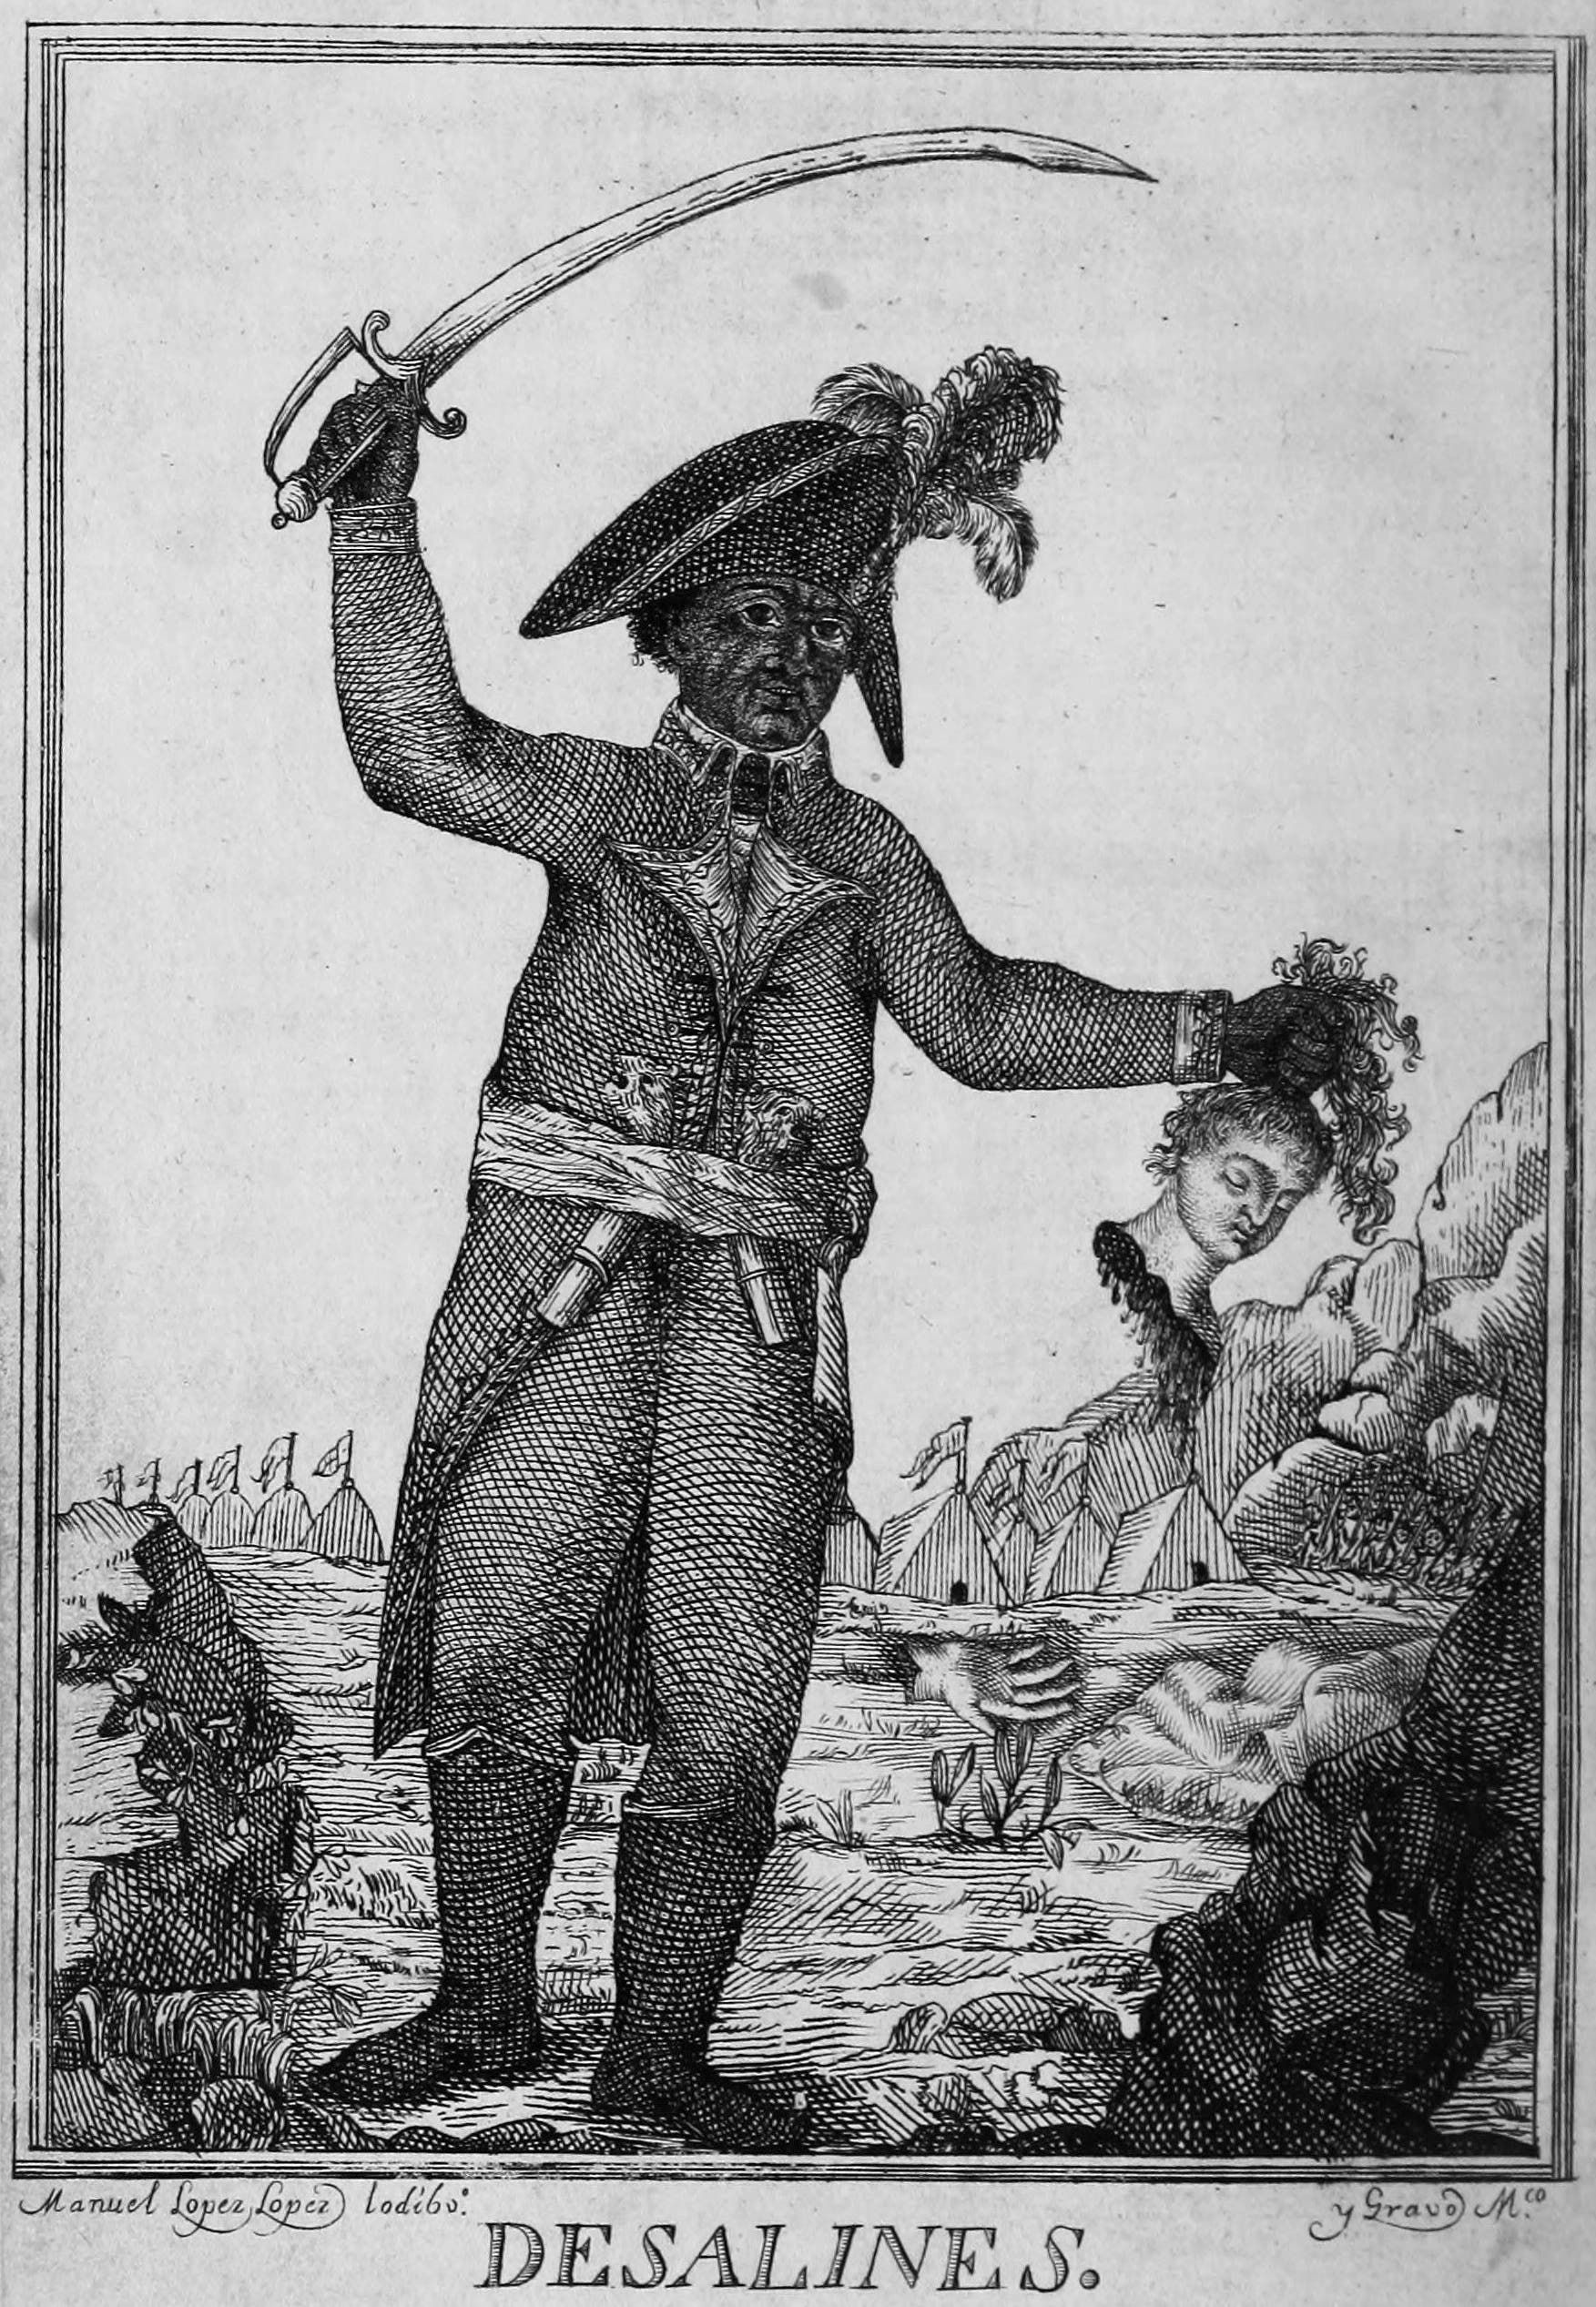 لوحة تجسد ديسالين وهو يحمل بيده رأس فرنسي